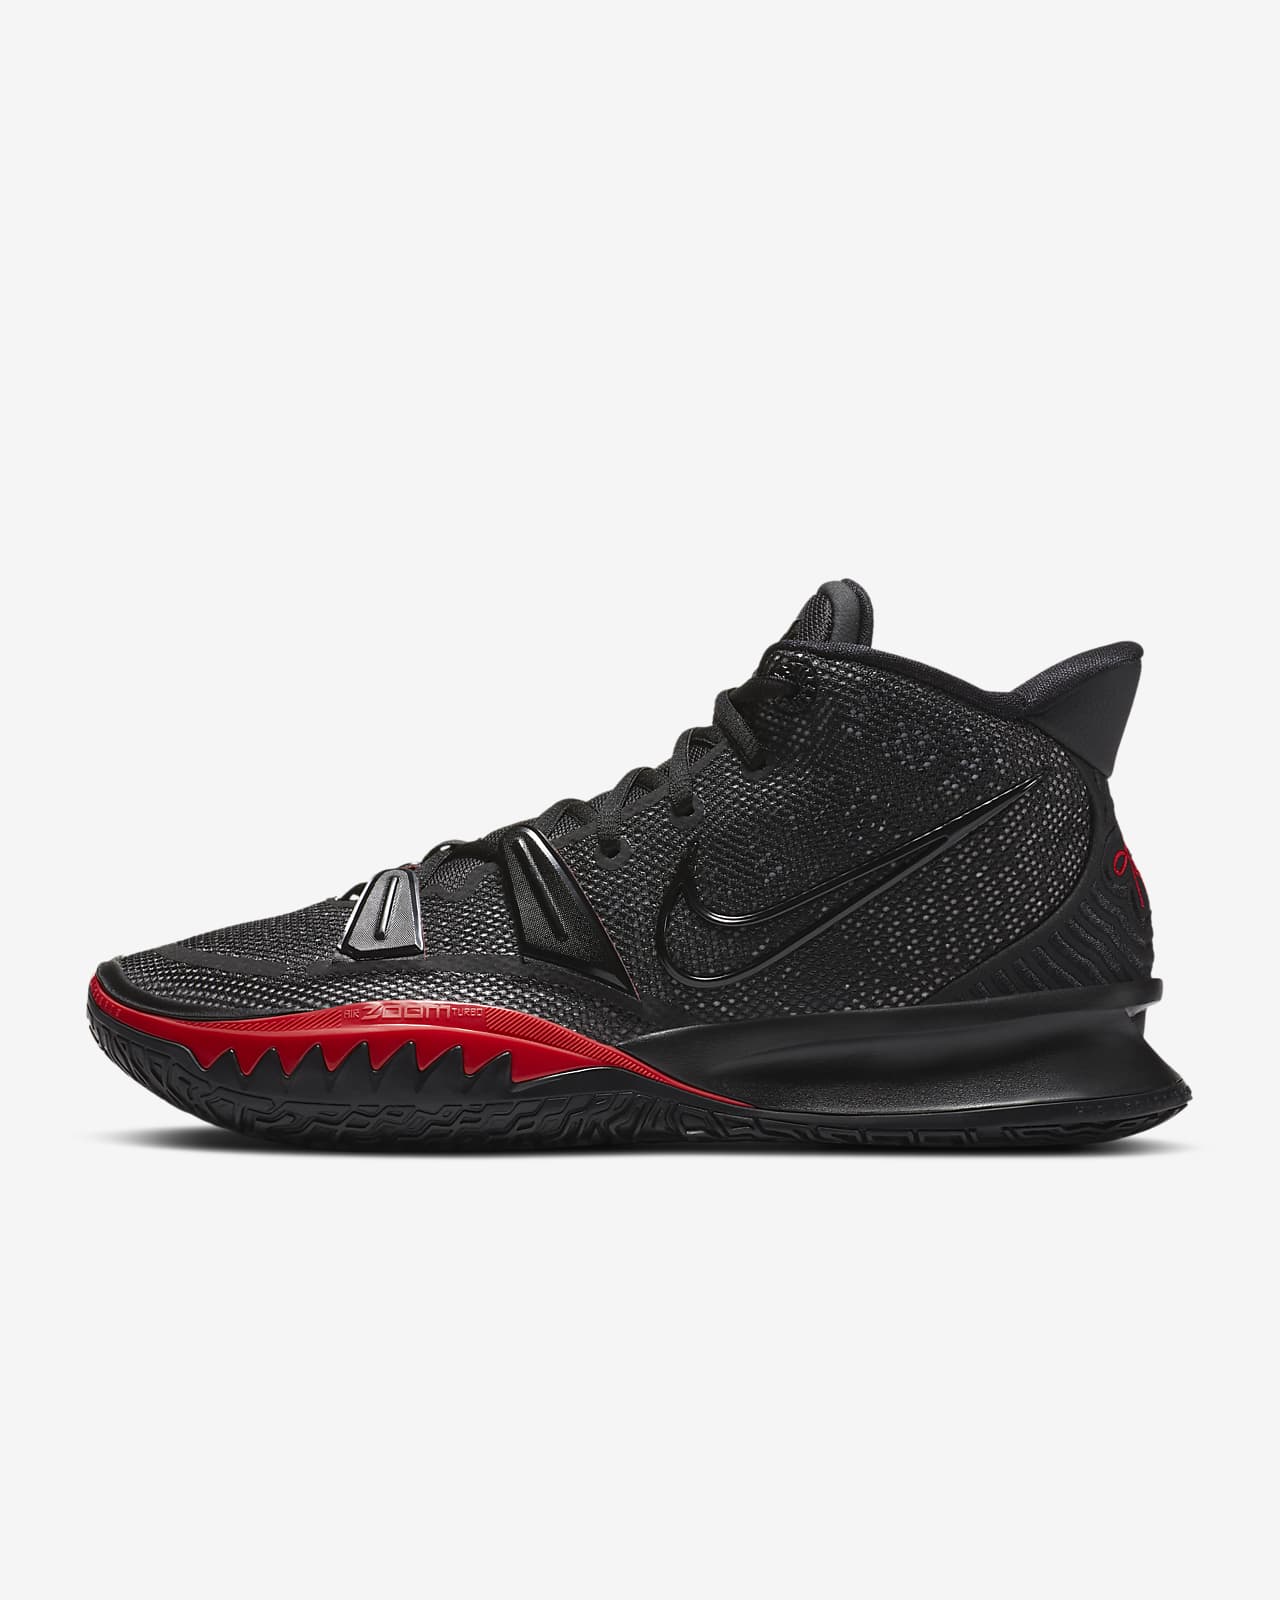 Kyrie 7 Basketball Shoe. Nike MA